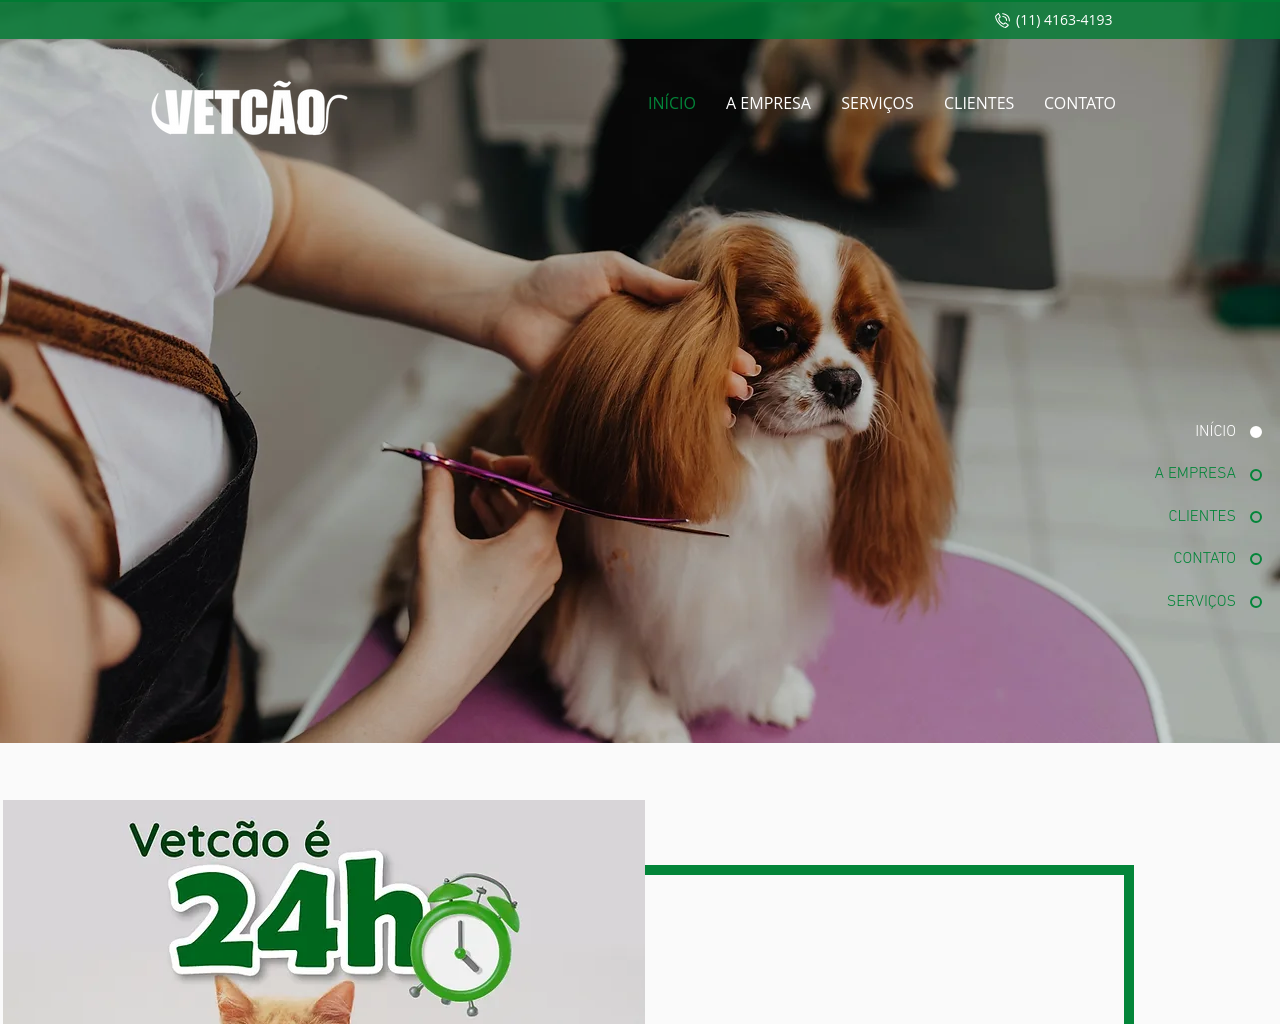 vetcao.com.br